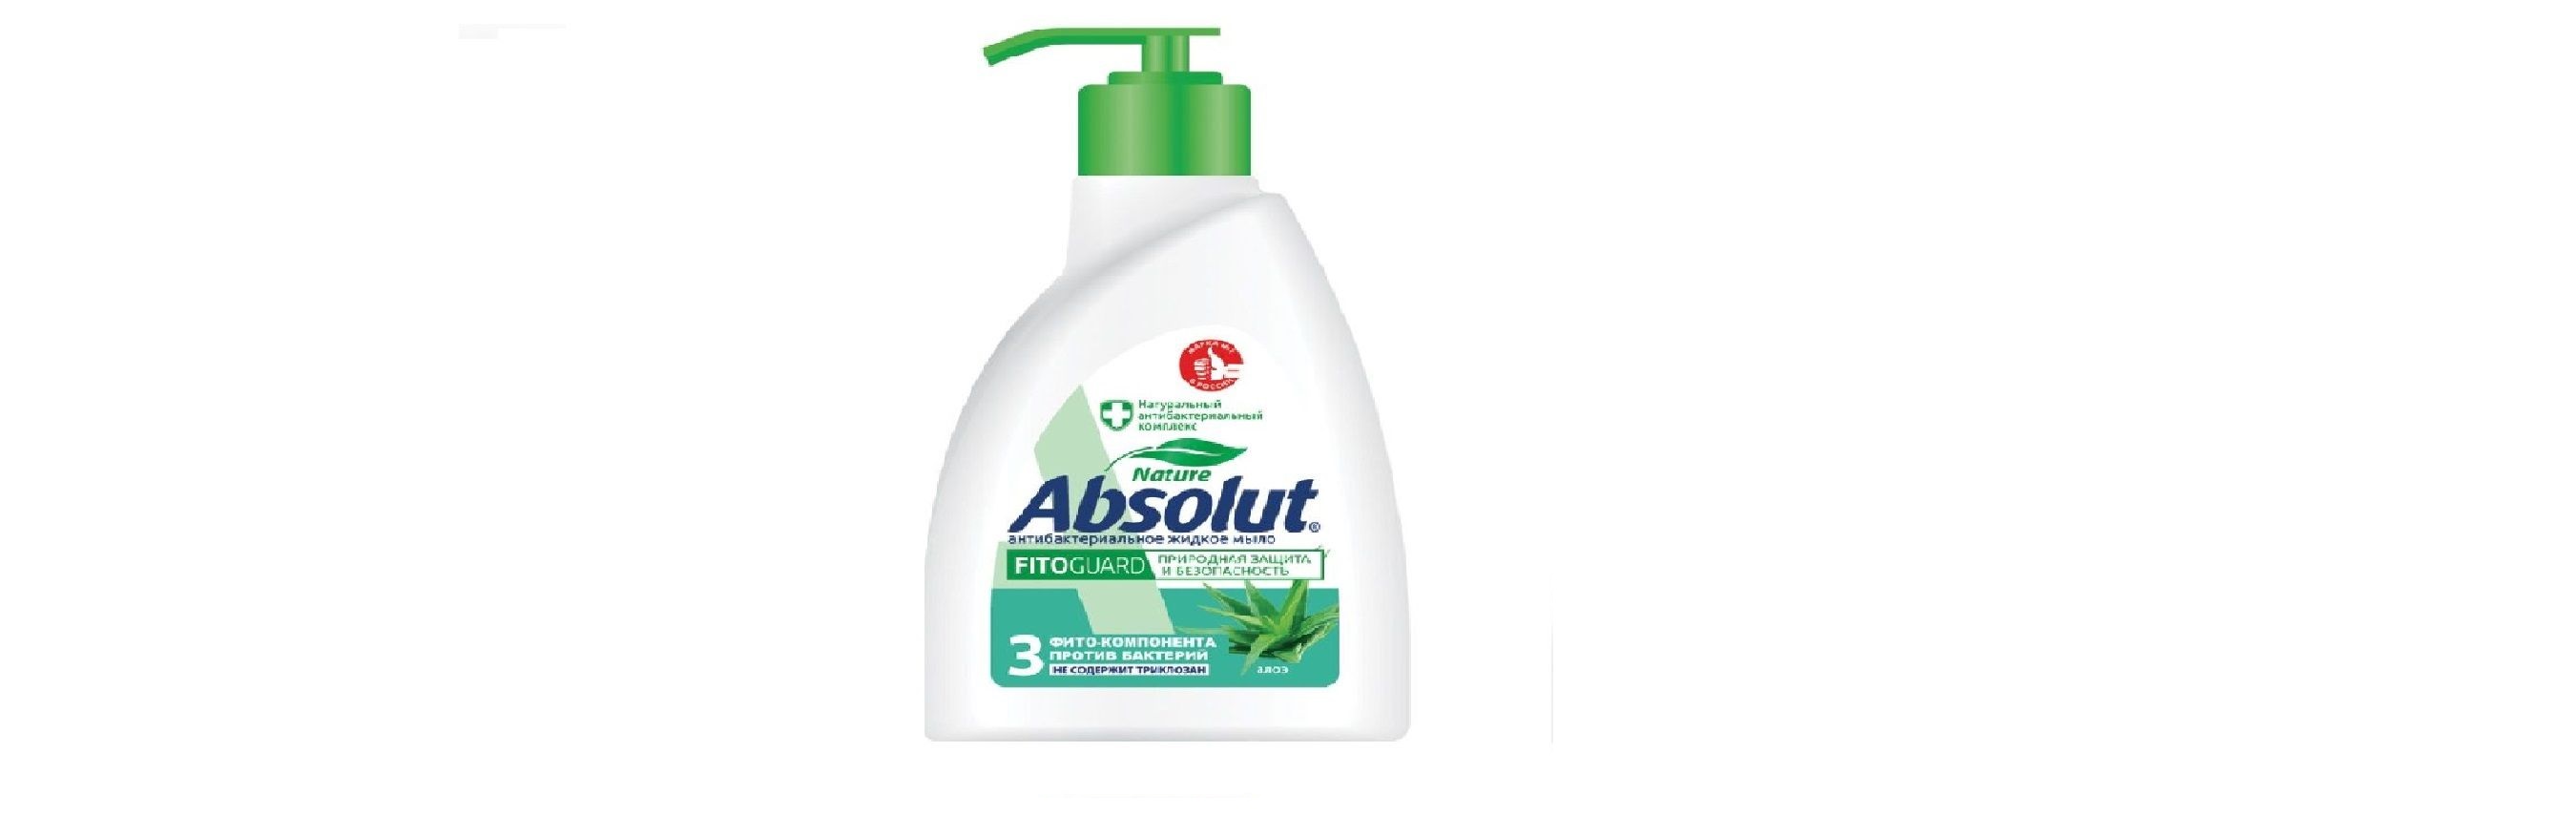 Мыло жидкое Absolut Алоэ Антибактериальное 250 мл 6 штук мыло жидкое absolut 2в1 нежное антибактериальное 250 мл 6 штук